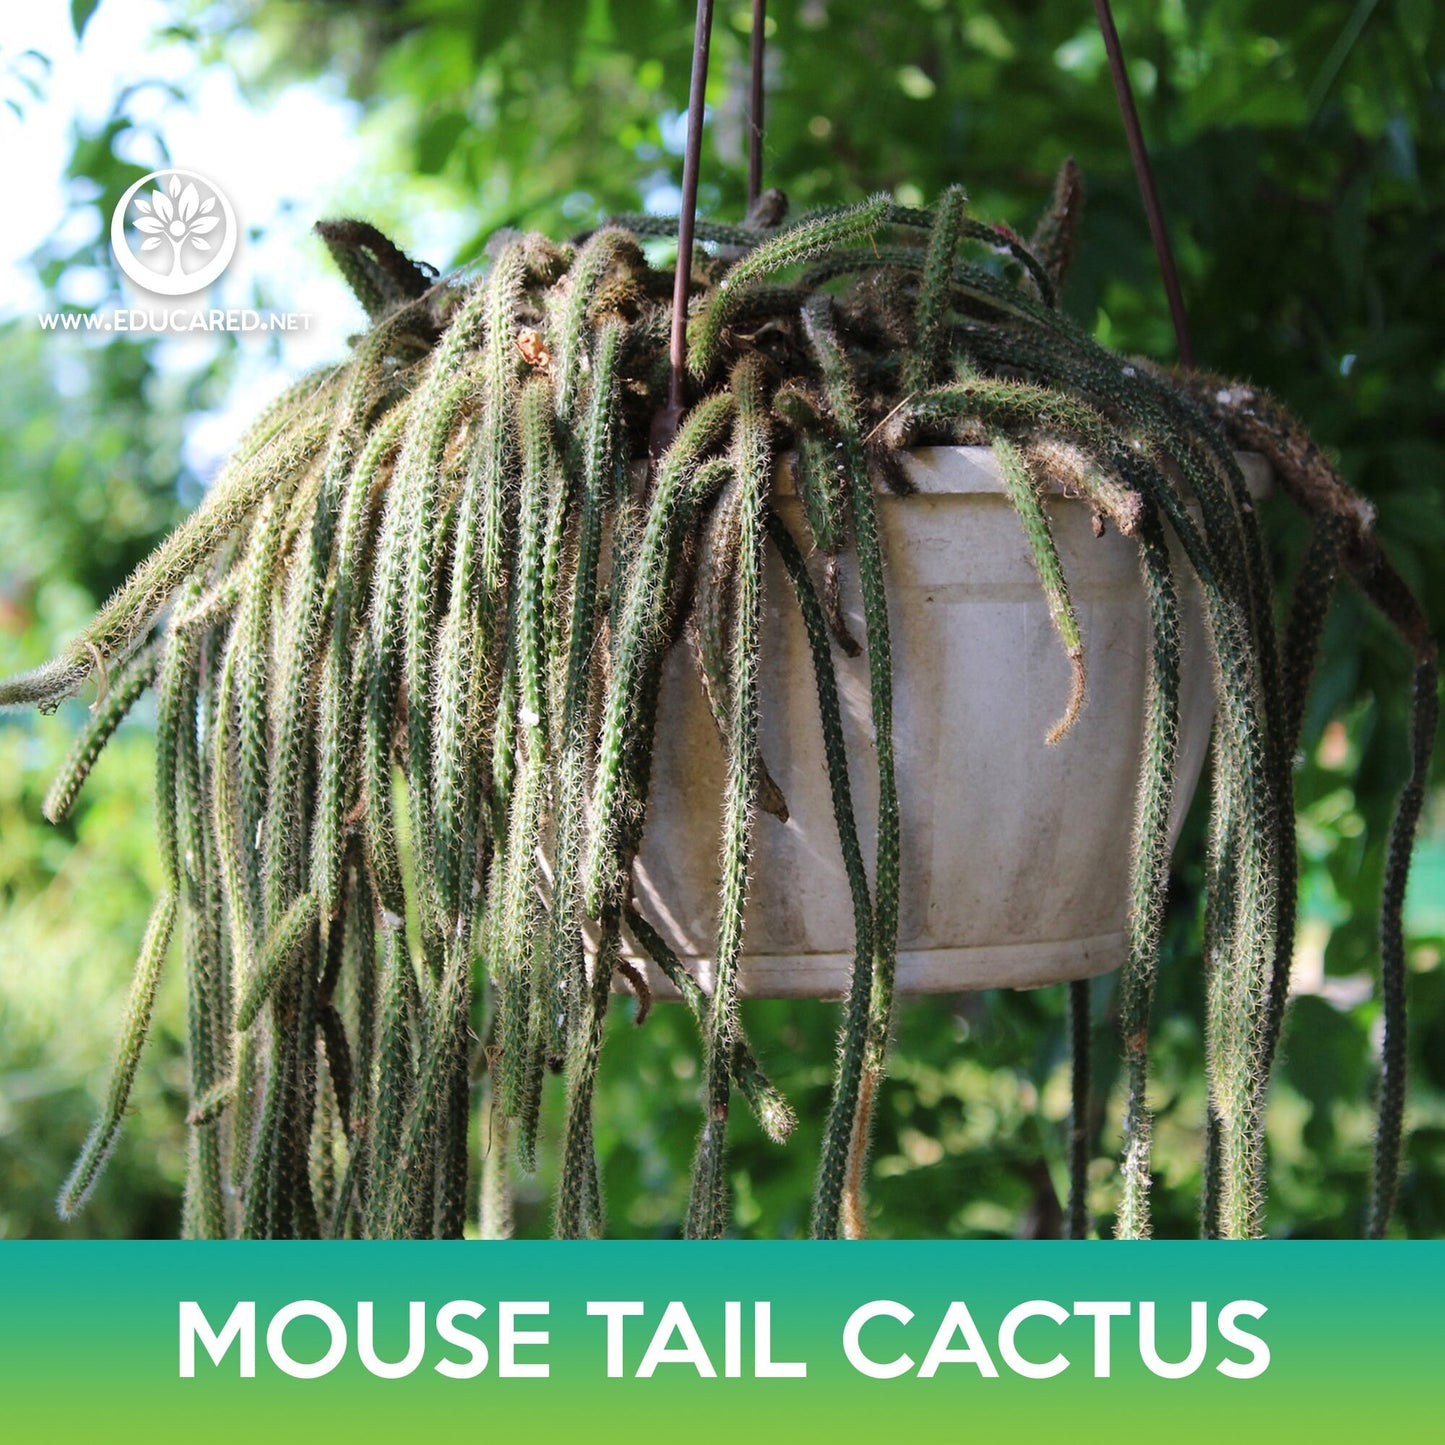 Mouse Tail Cactus Seeds, Rhipsalis horrida madagascar